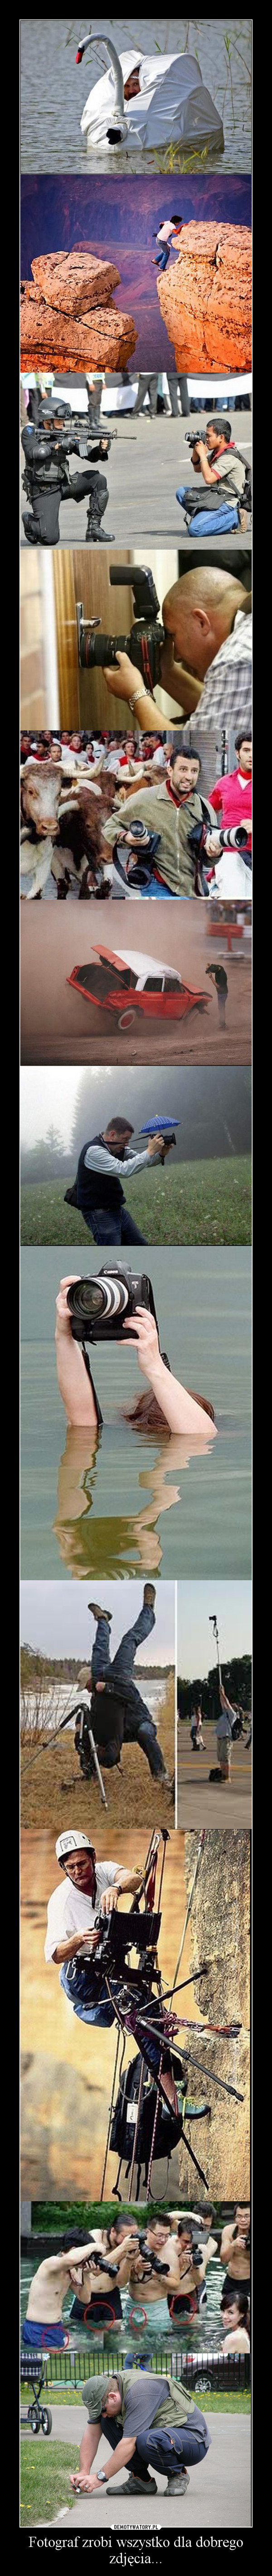 Fotograf zrobi wszystko dla dobrego zdjęcia...